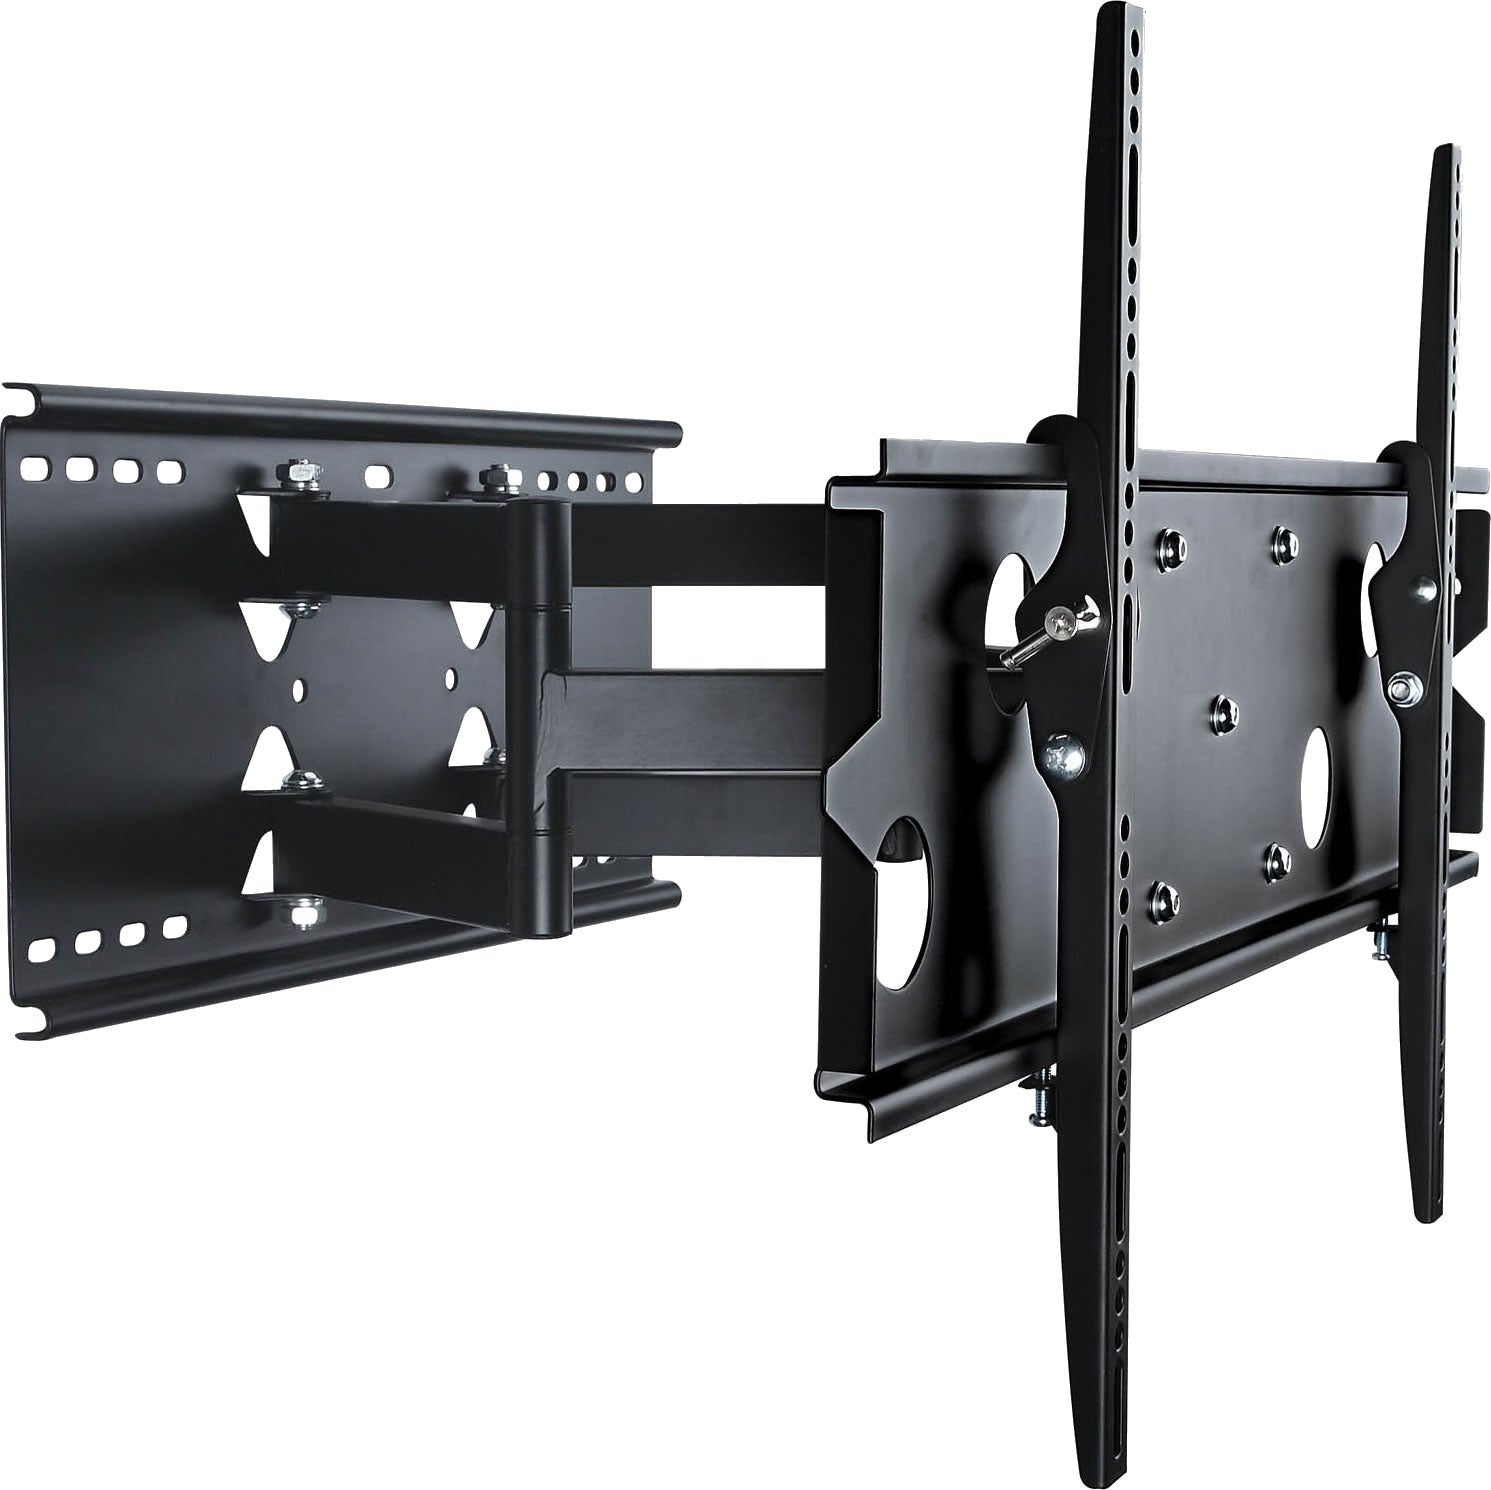 64-1127L Full motion Plasma LCD LED TV Wall Mount Slimline Bracket for 42-70 inches TVs